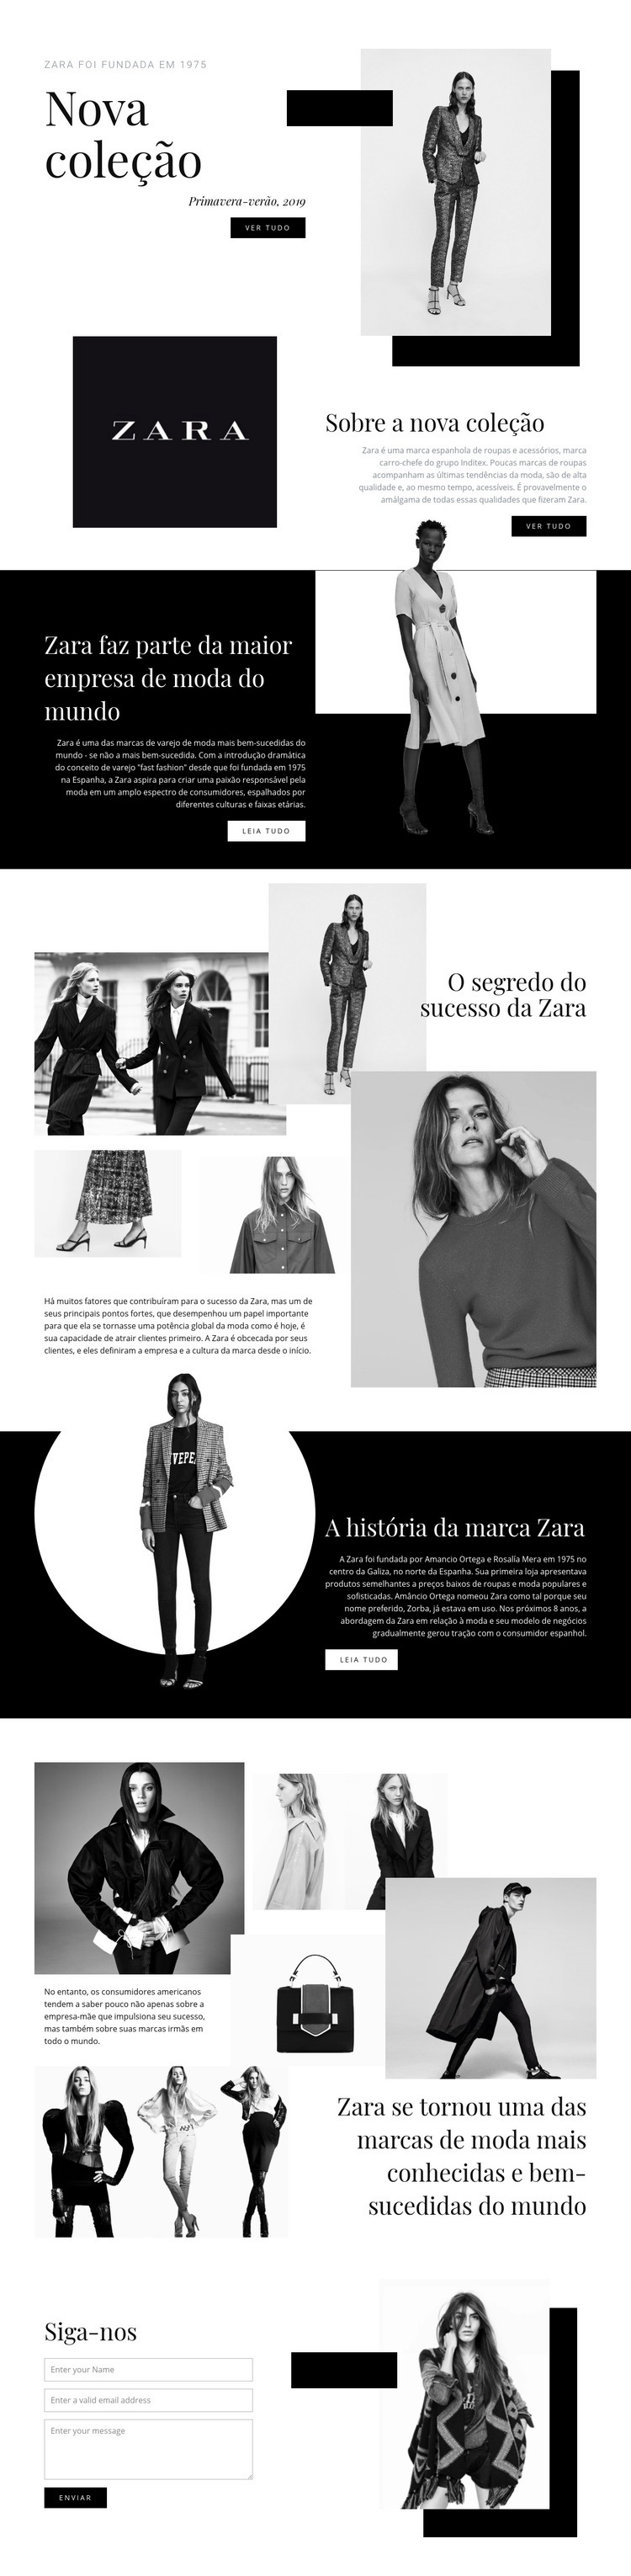 Coleção Zara Design do site